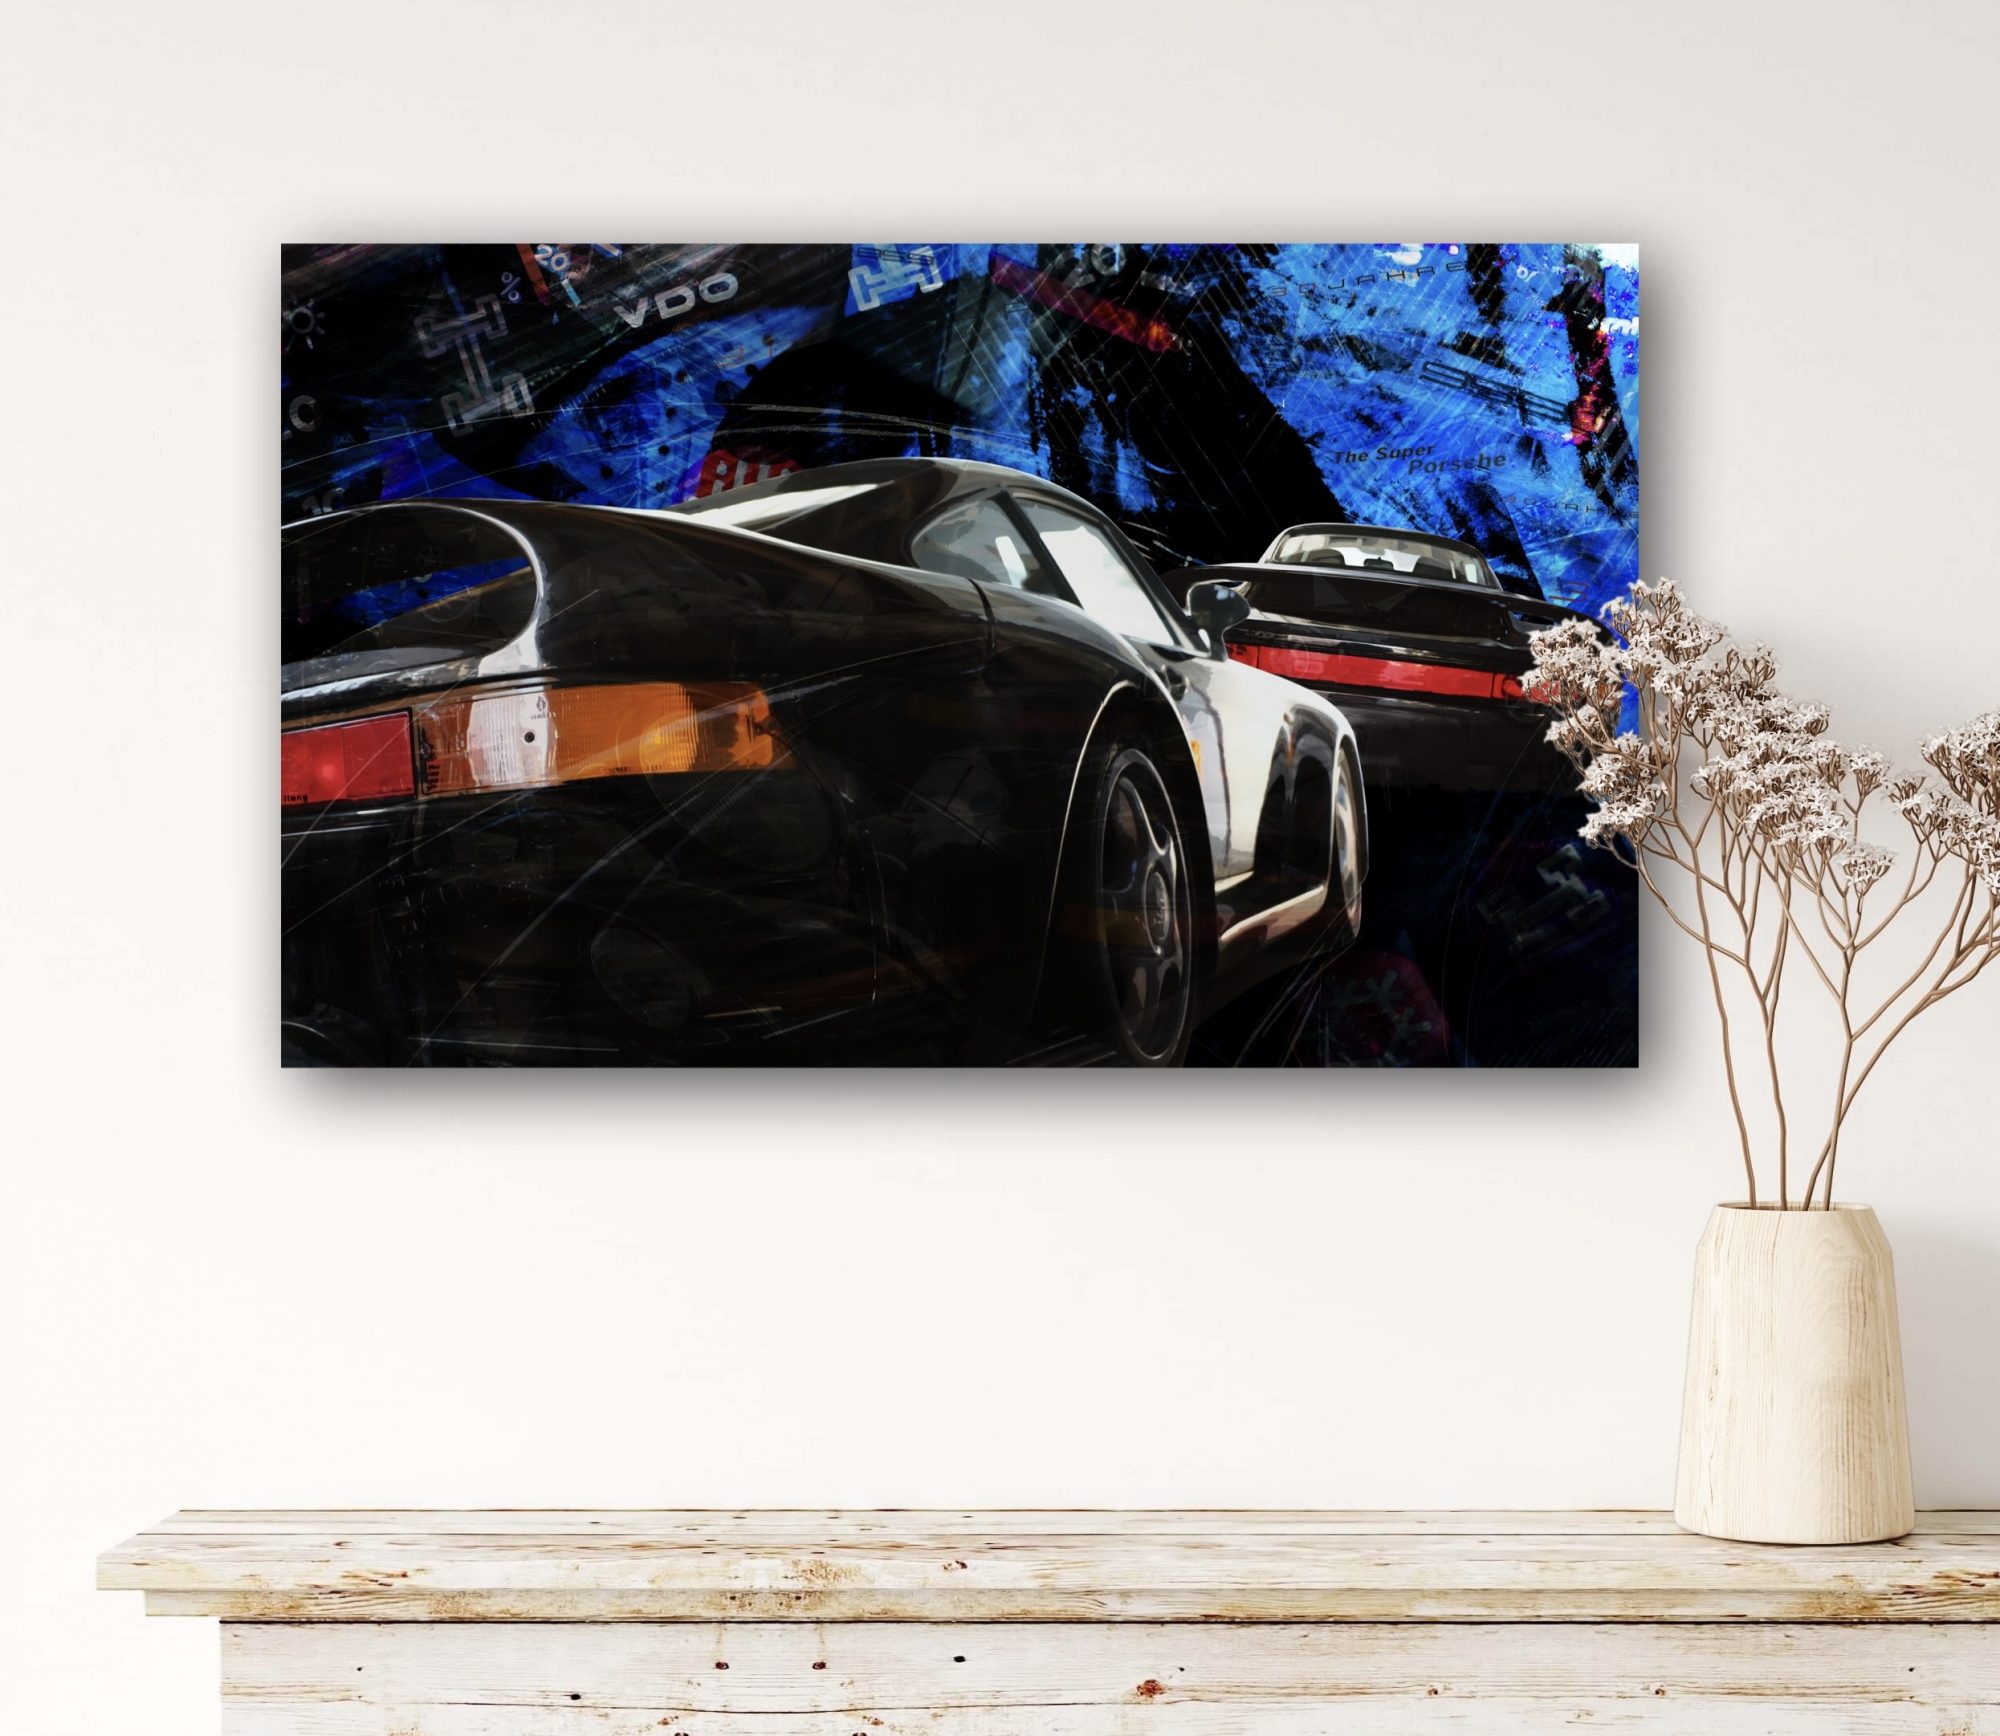 Oeuvre Porsche 959 - supercar - artiste Caroline LLONG - fournisseur officiel de la fédération des clubs Porsche de France - art automobile - tableau